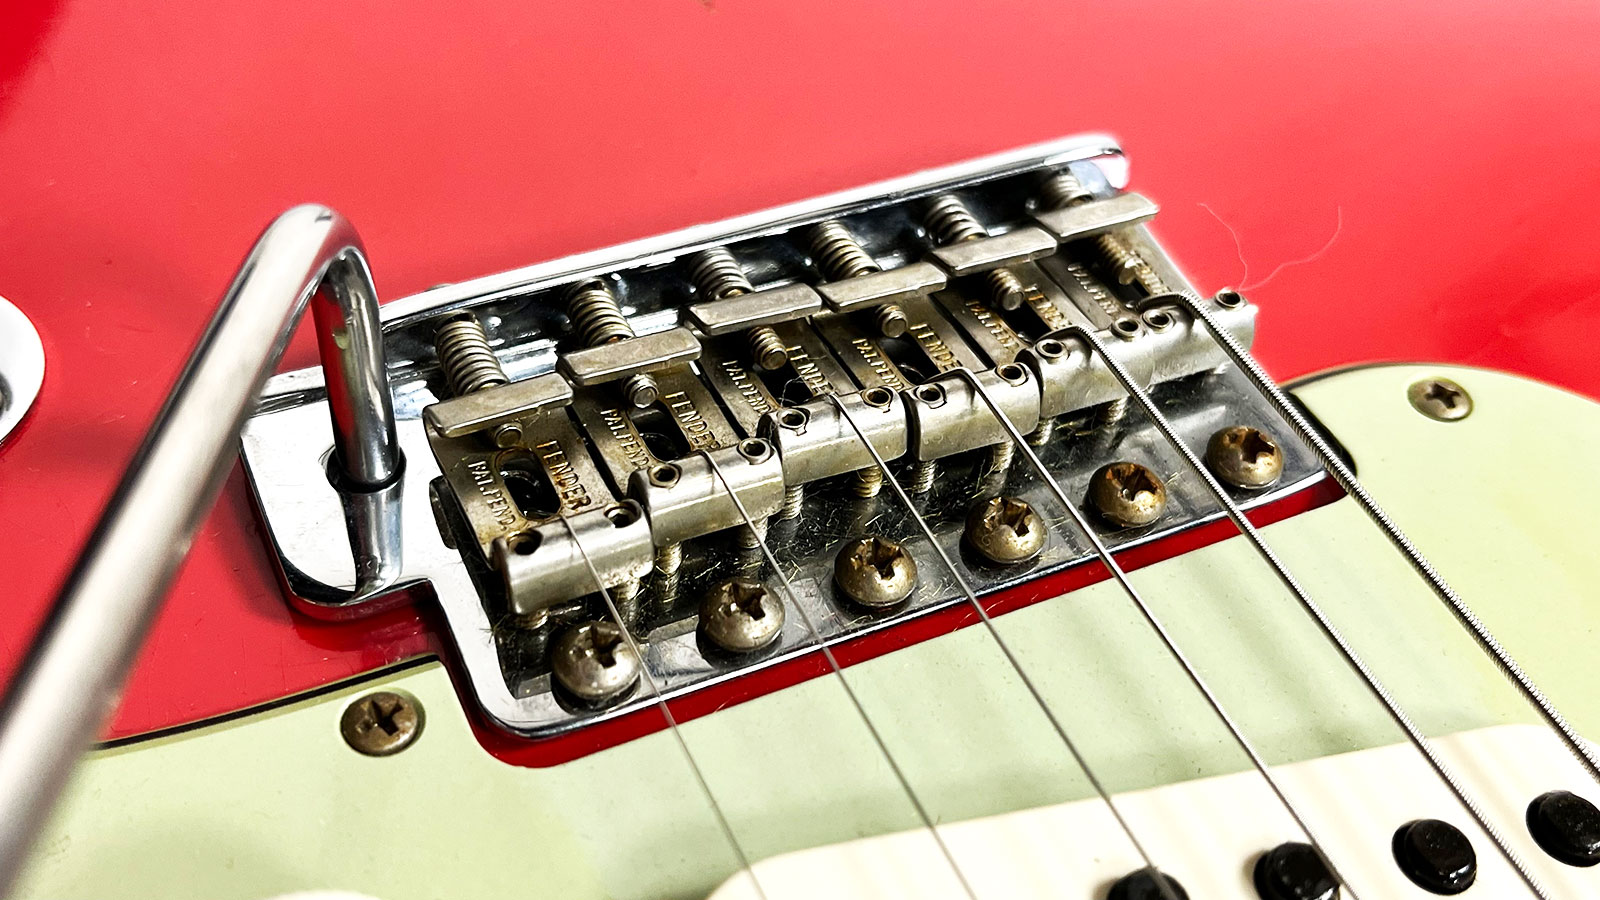 Fender Custom Shop Strat 1963 3s Trem Rw #r117571 - Relic Fiesta Red - Elektrische gitaar in Str-vorm - Variation 2